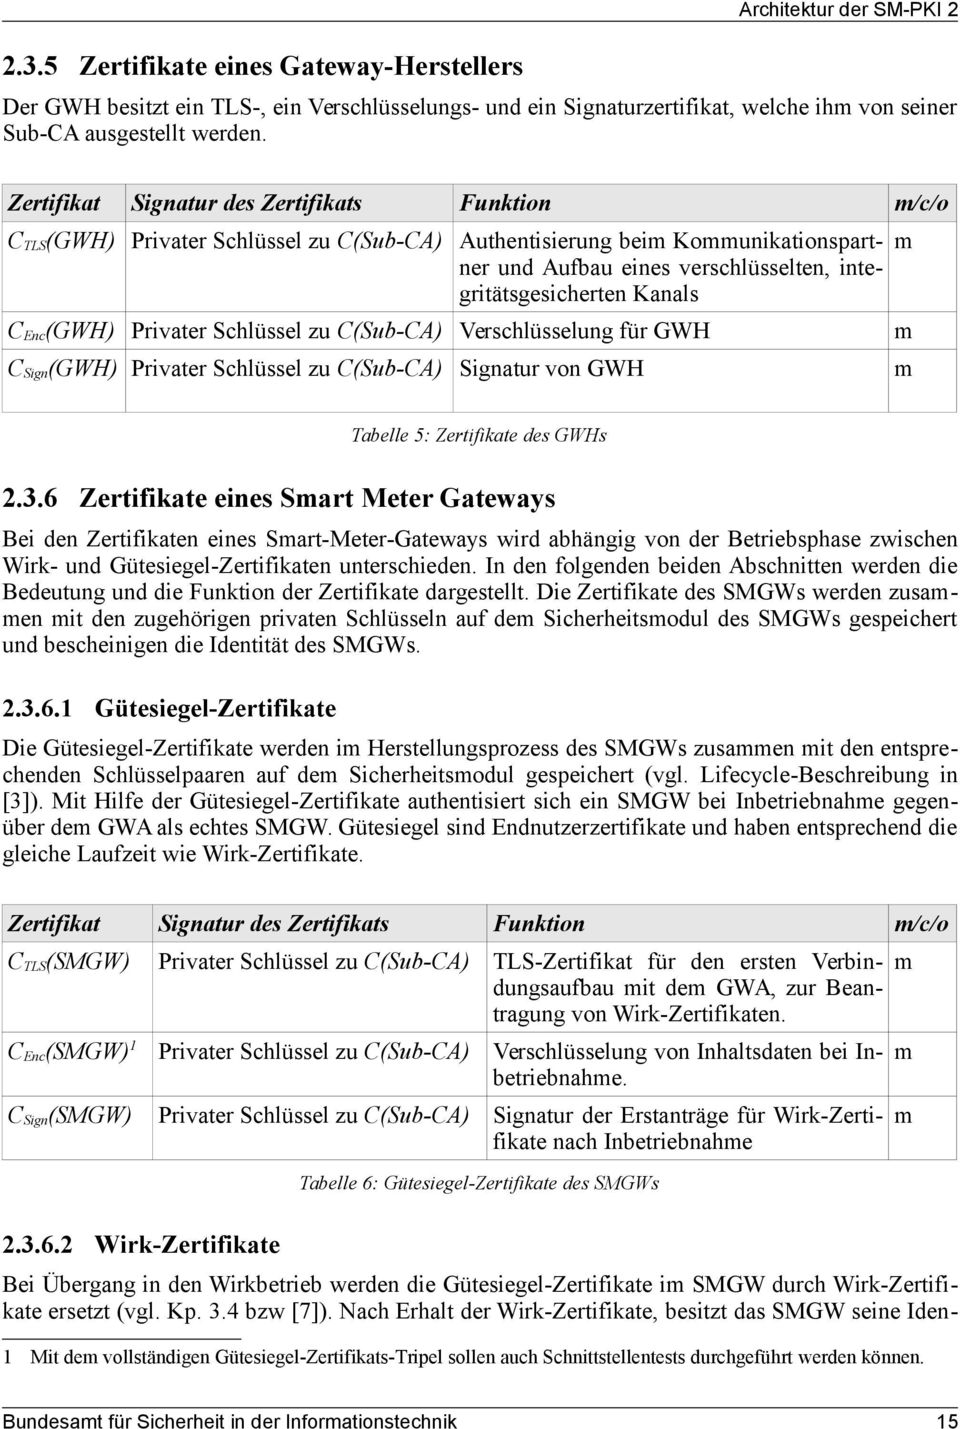 Kanals C Enc (GWH) Privater Schlüssel zu C(Sub-CA) Verschlüsselung für GWH C Sign (GWH) Privater Schlüssel zu C(Sub-CA) Signatur von GWH m m m Tabelle 5: Zertifikate des GWHs 2.3.